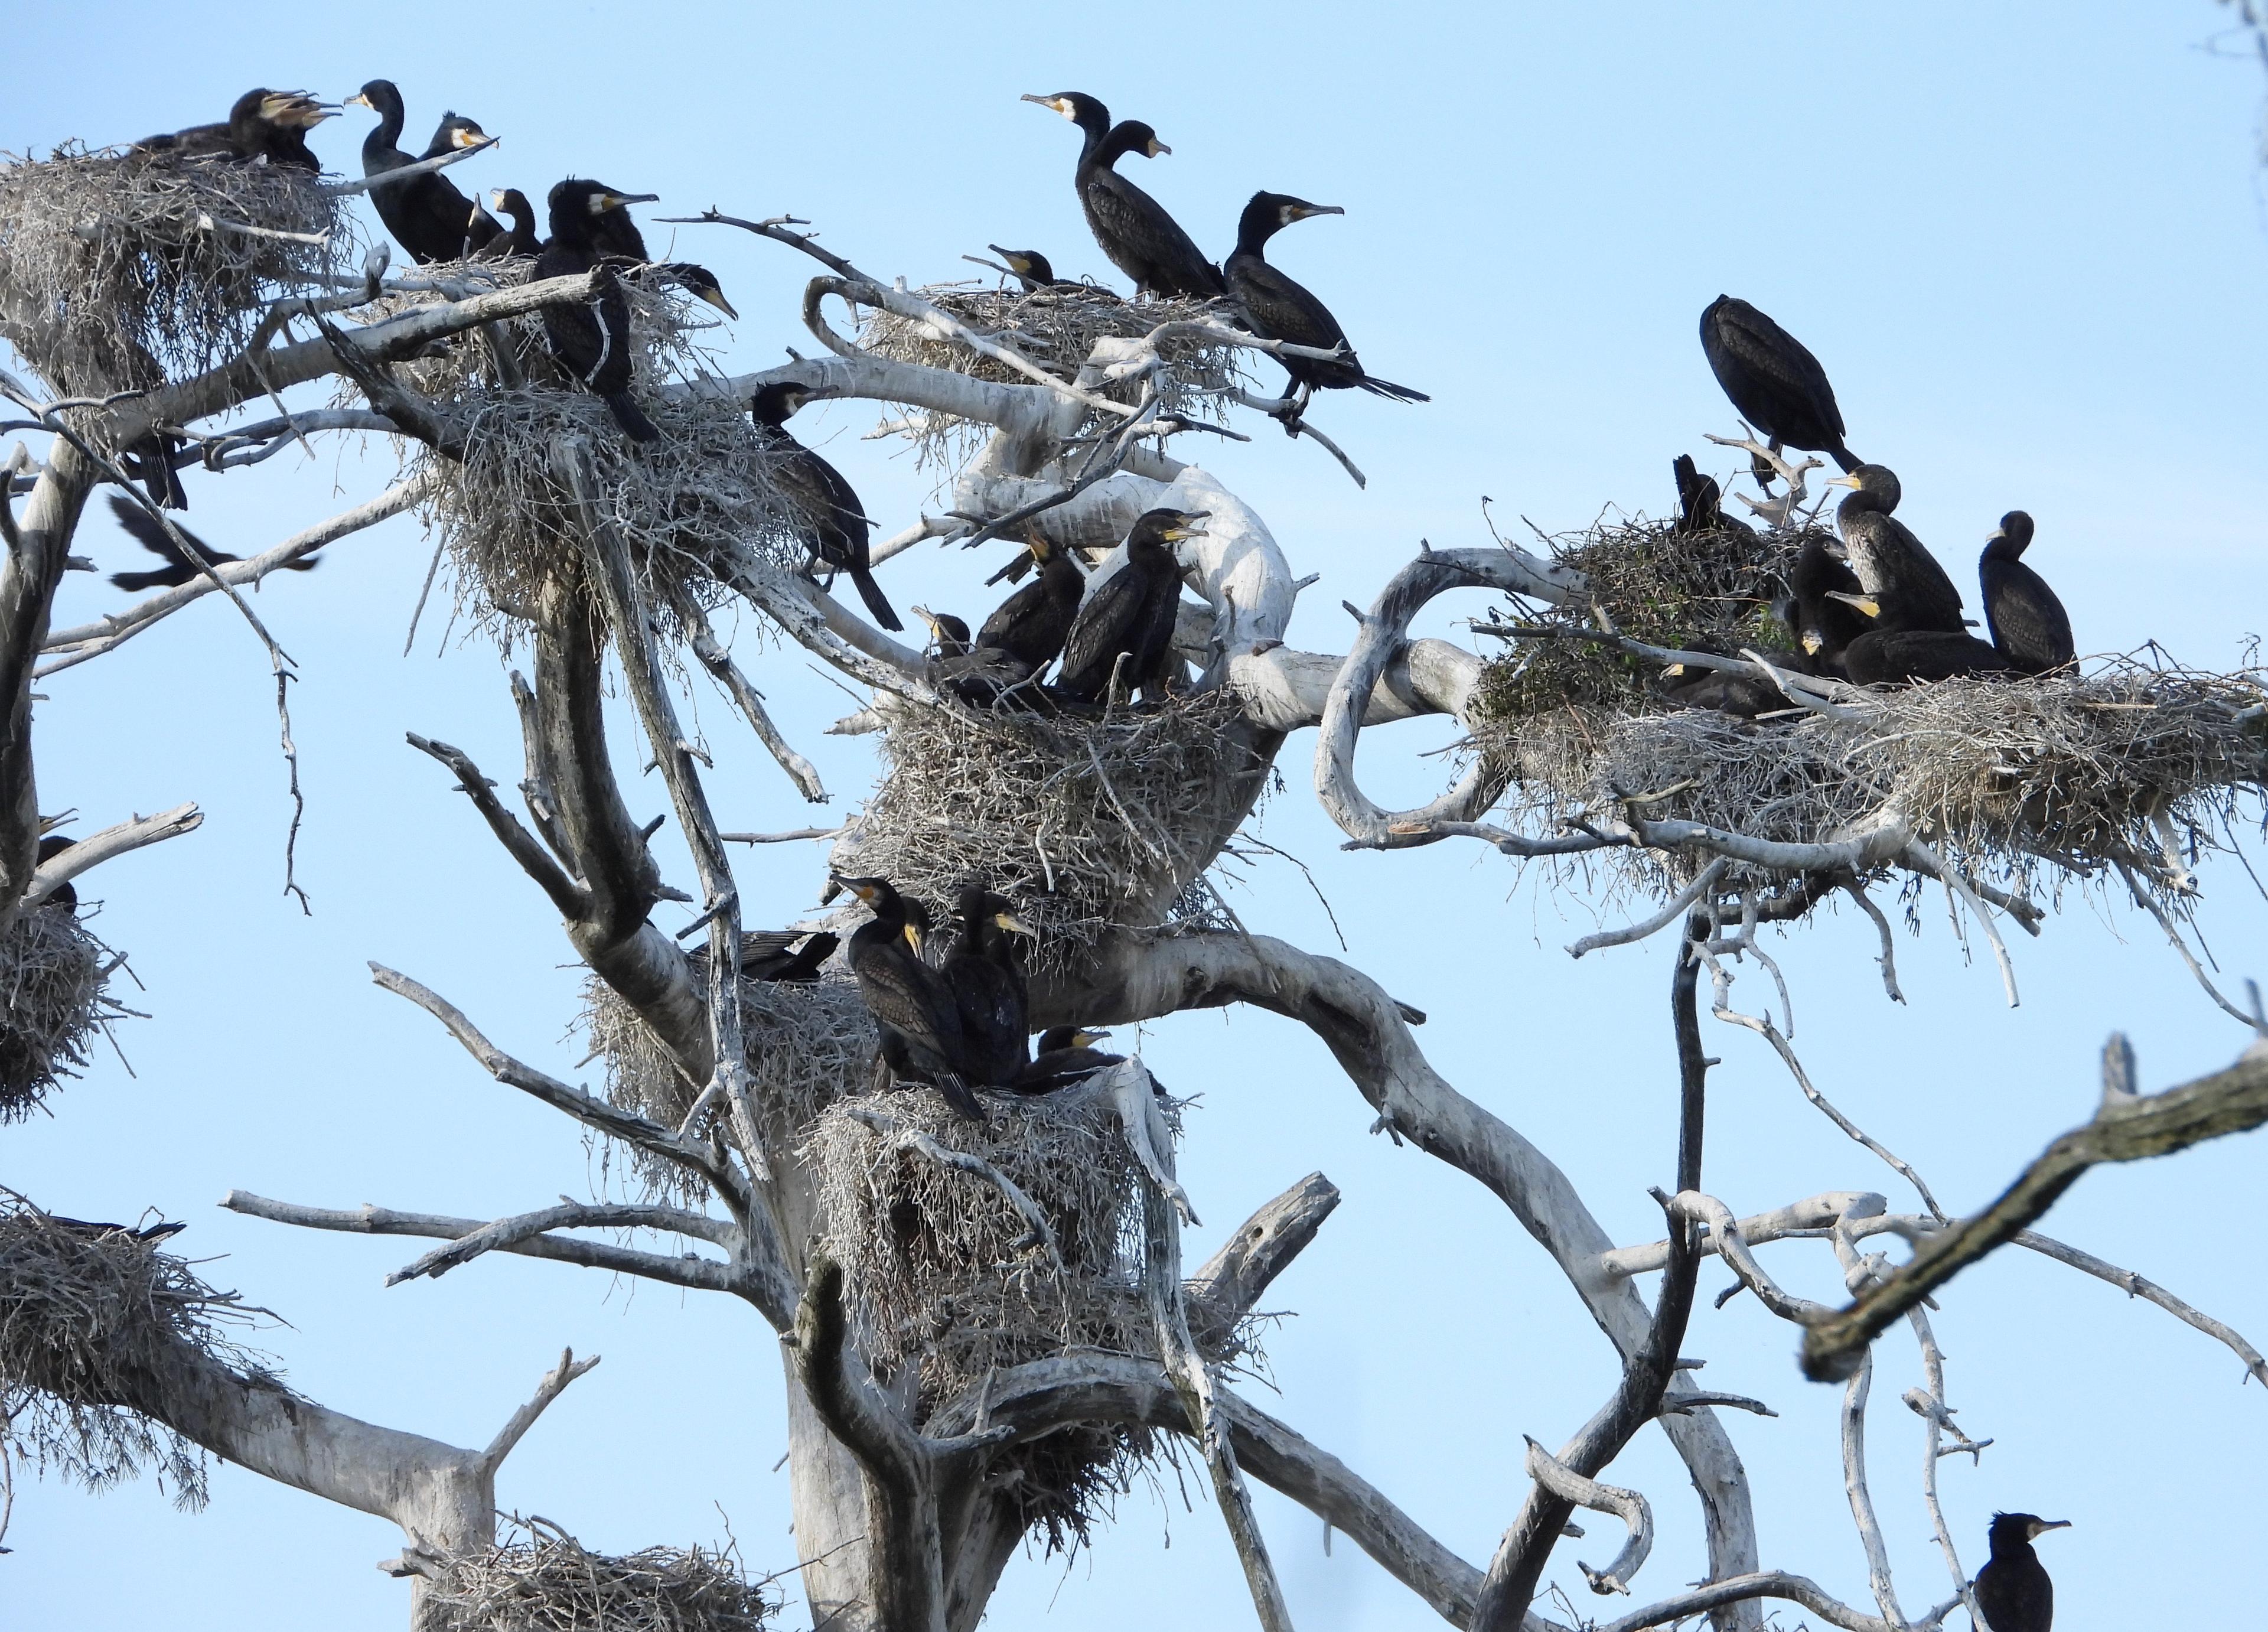 Ptaki (kormorany) siędzą w gniazdach na gałęziach drzewa